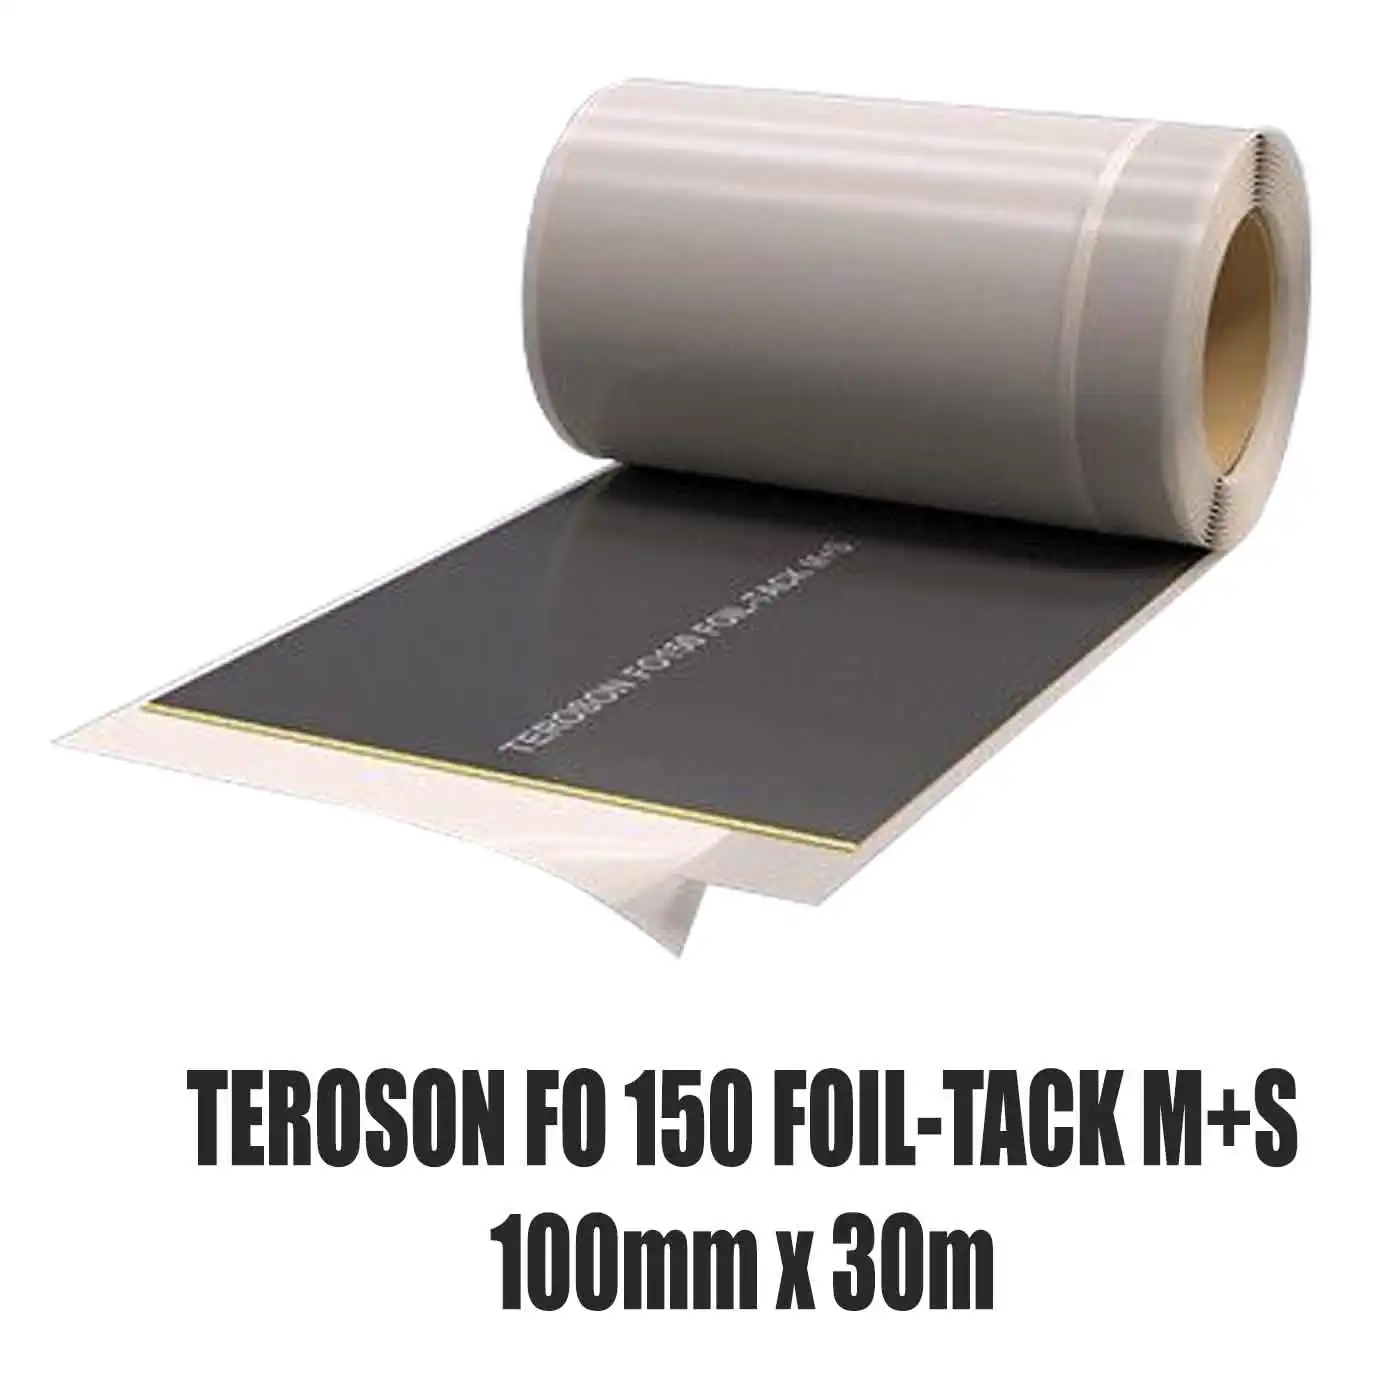 Dichtfolie TEROSON FO 150 FOIL-TACK M+S 100 mm x 30 m